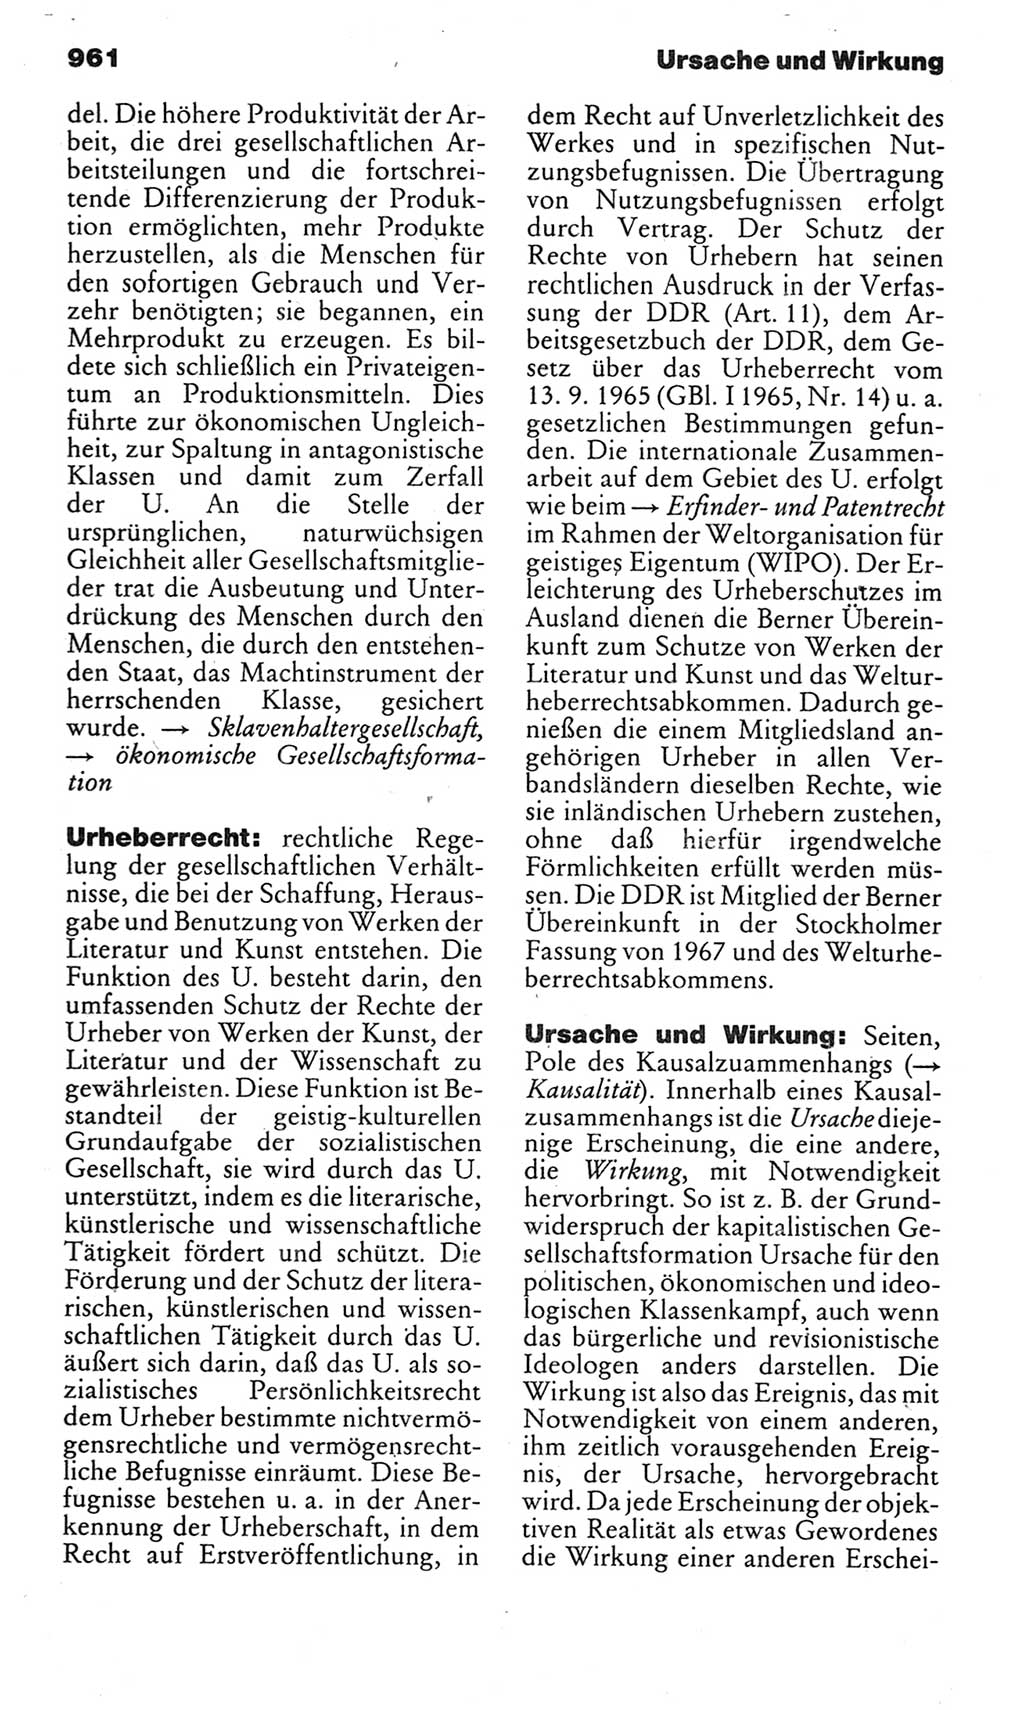 Kleines politisches Wörterbuch [Deutsche Demokratische Republik (DDR)] 1983, Seite 961 (Kl. pol. Wb. DDR 1983, S. 961)